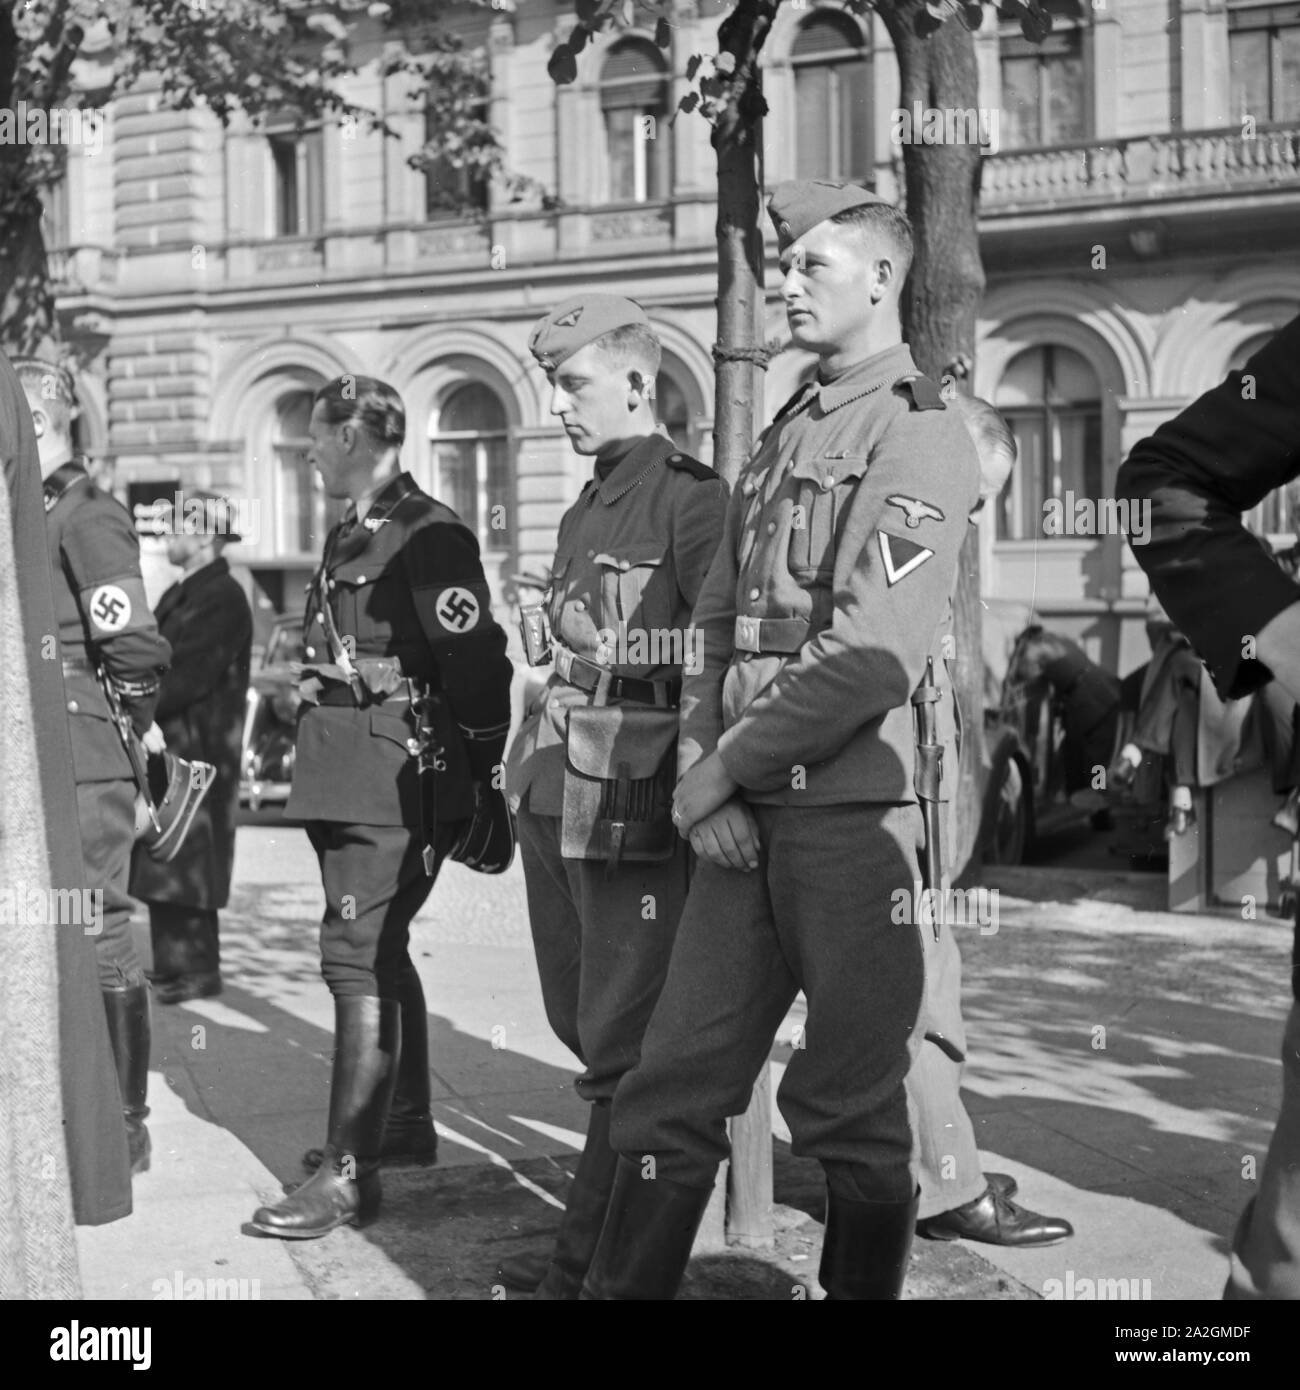 Wehrmachtssoldaten und SS Leute im Hof von Schloss Sanssouci a Potsdam, Deutschland 1930er Jahre. Werhamcht soldati e SS uomini presso i giardini del castello Sanssouci a Potsdam, Germania 1930s. Foto Stock